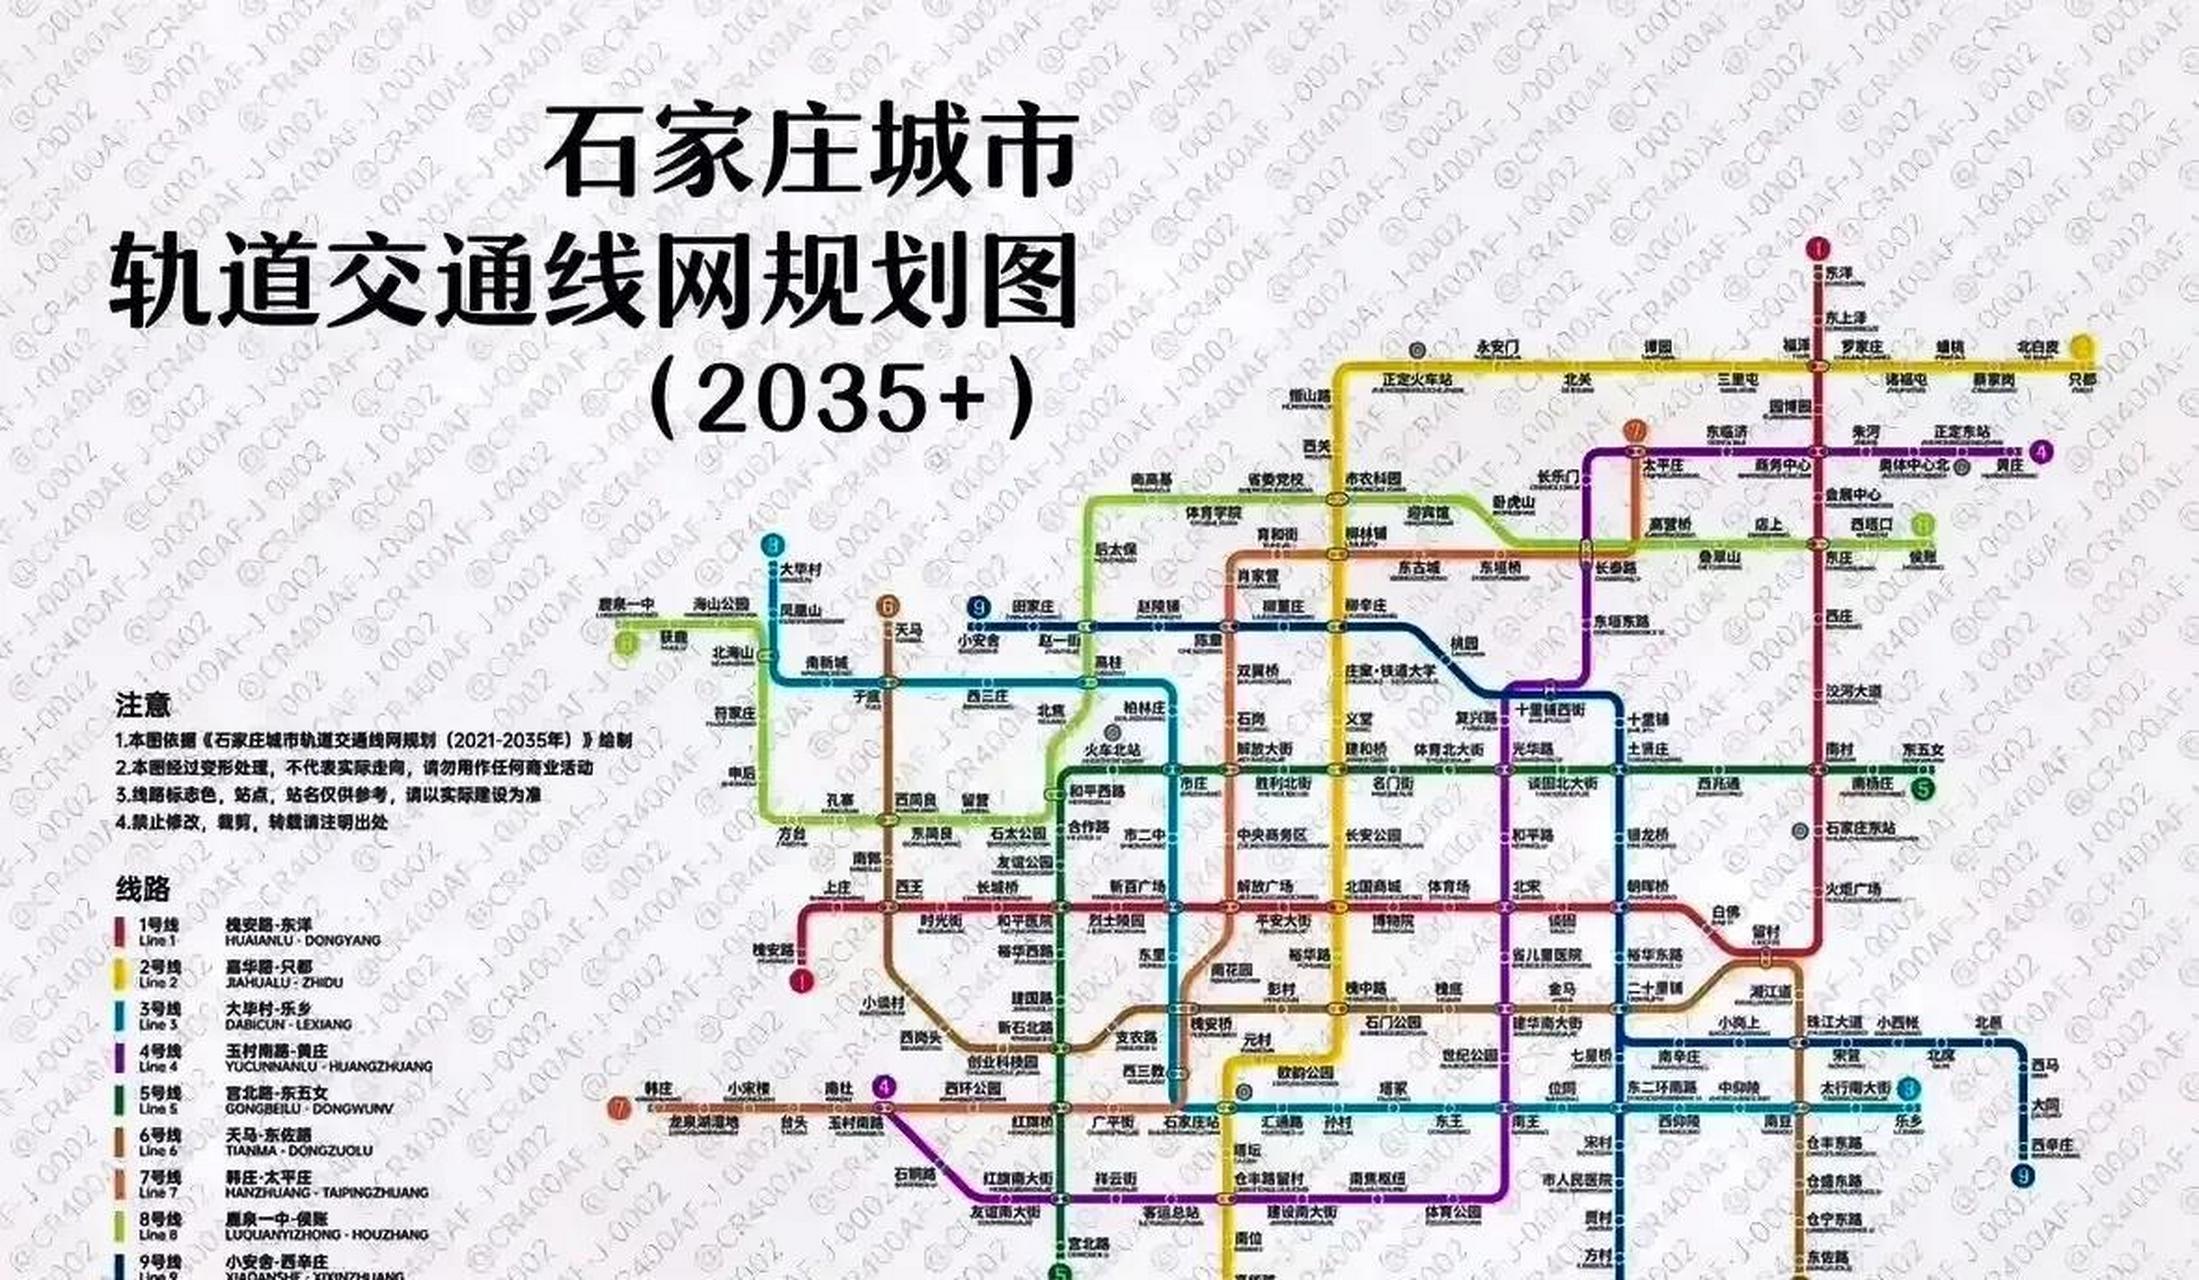 石家庄的9条地铁线,这个规划图是到2035年 的,是十多年后的地铁规划